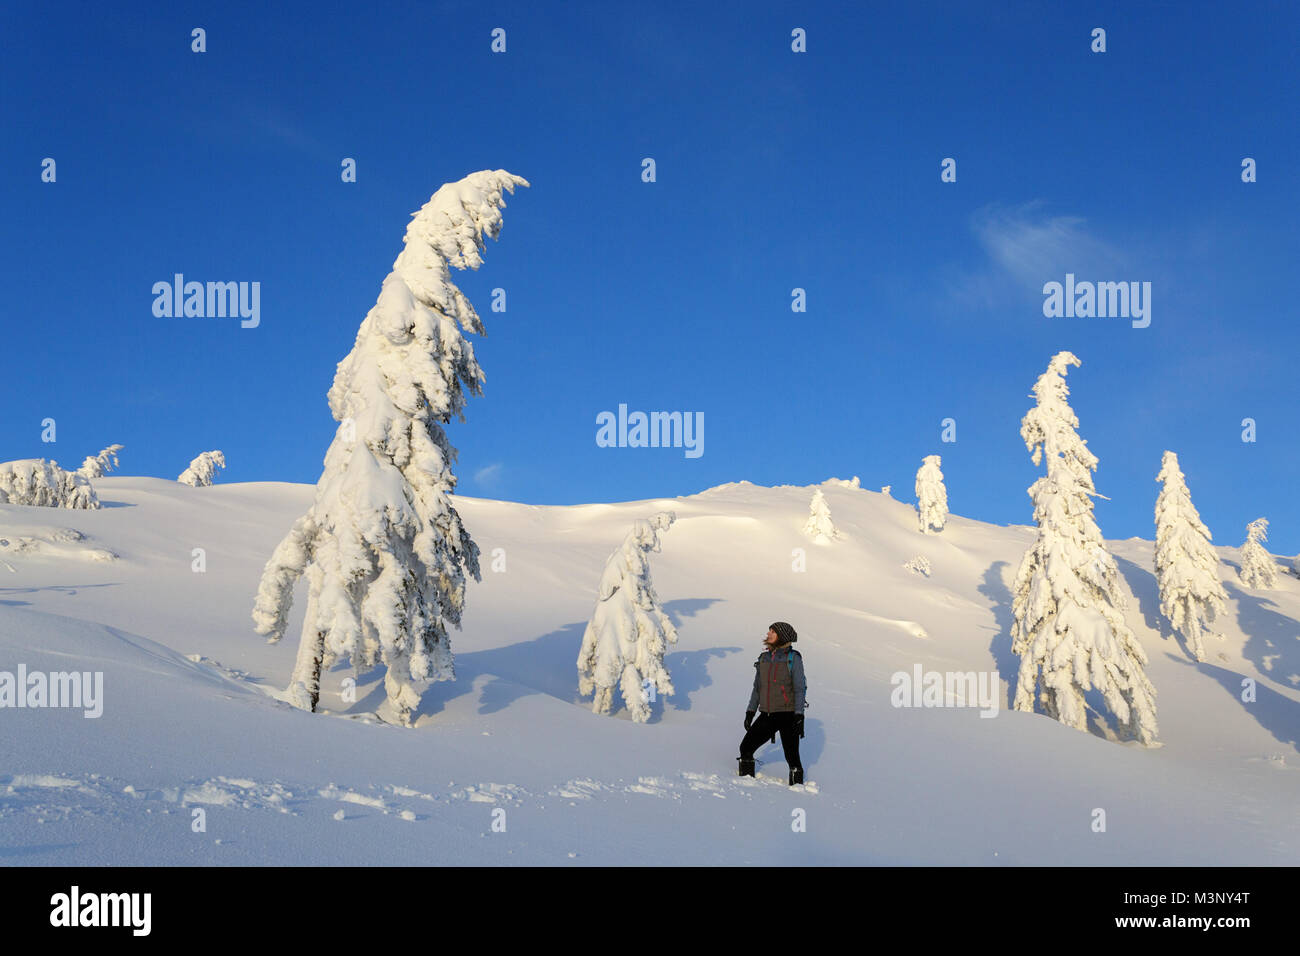 Femme debout entre les pins on a snowy Winter Wonderland Velika planina, la montagne, la Slovénie. Banque D'Images